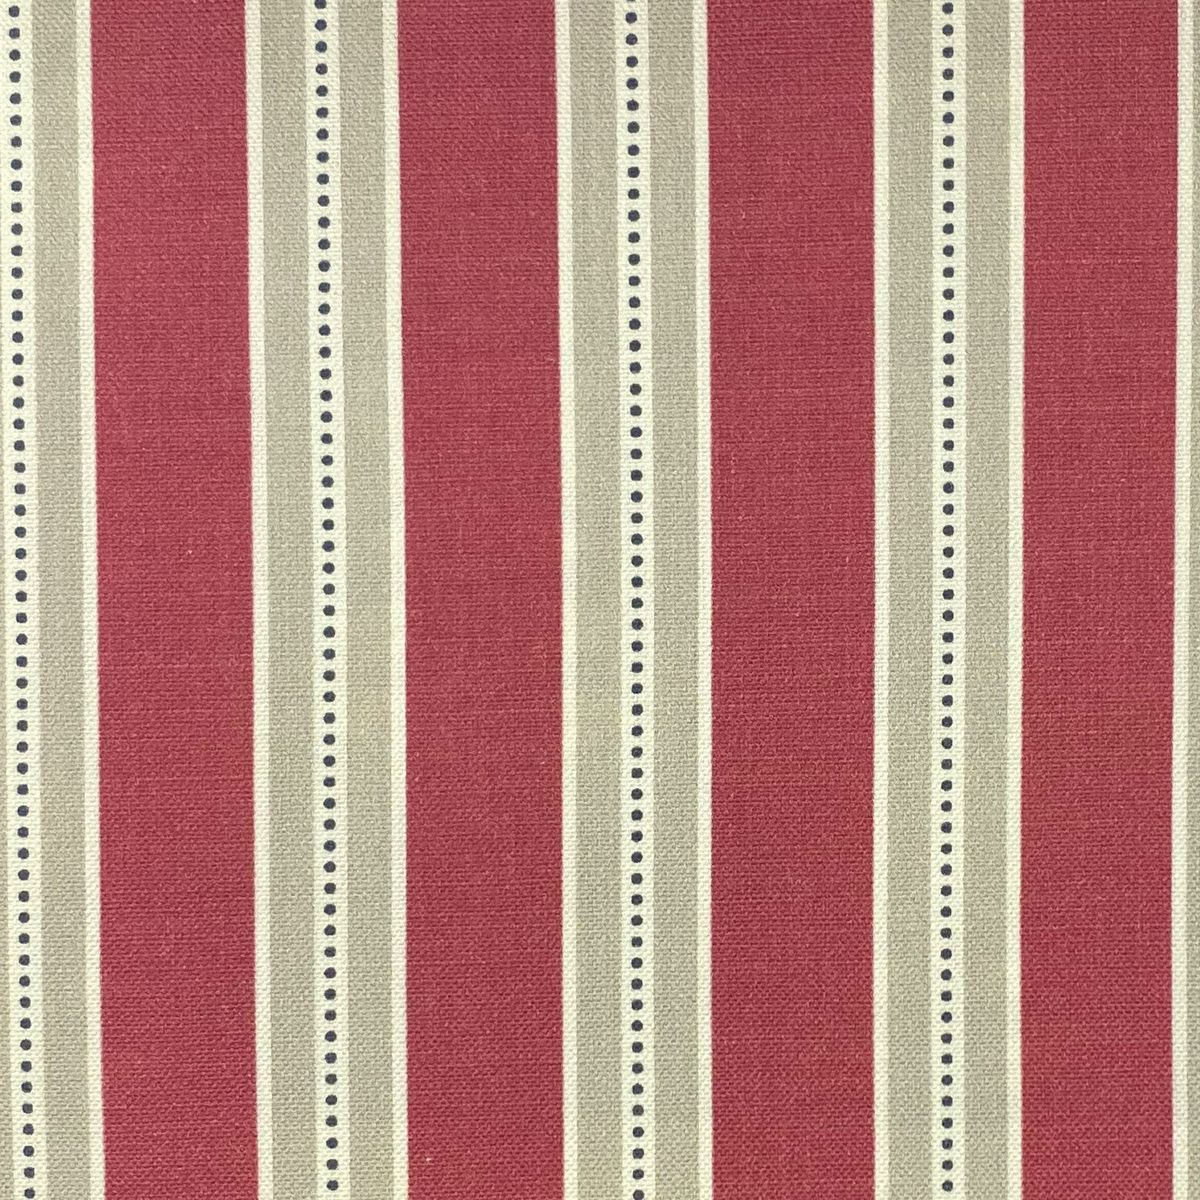 Drayton Raspberry Fabric by Chatham Glyn